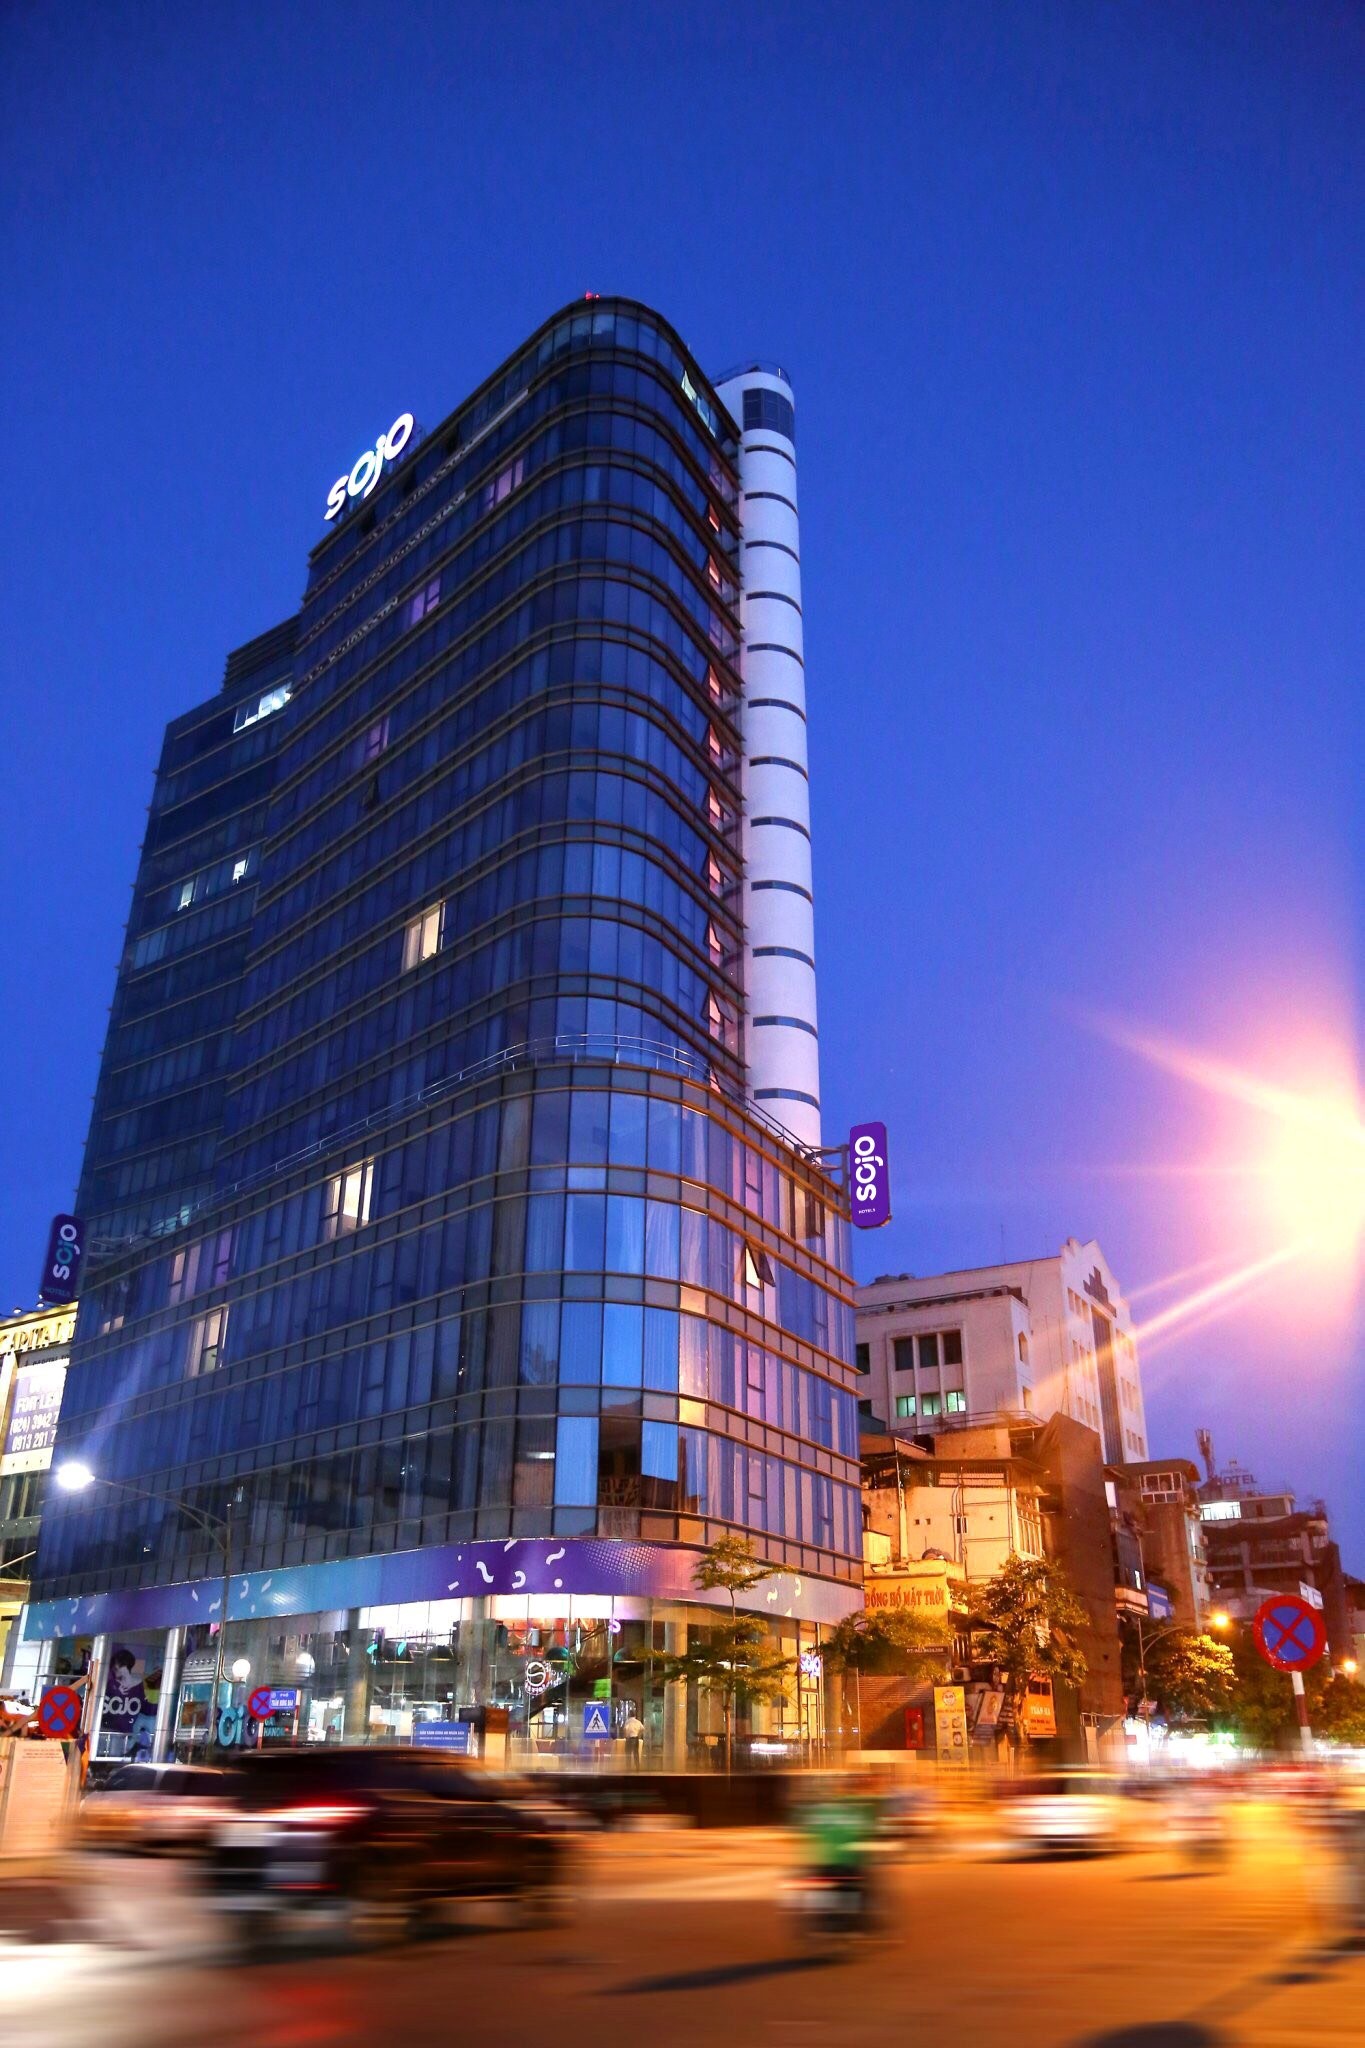 SOJO Hotels gợi ý hướng đi mới cho ngành khách sạn